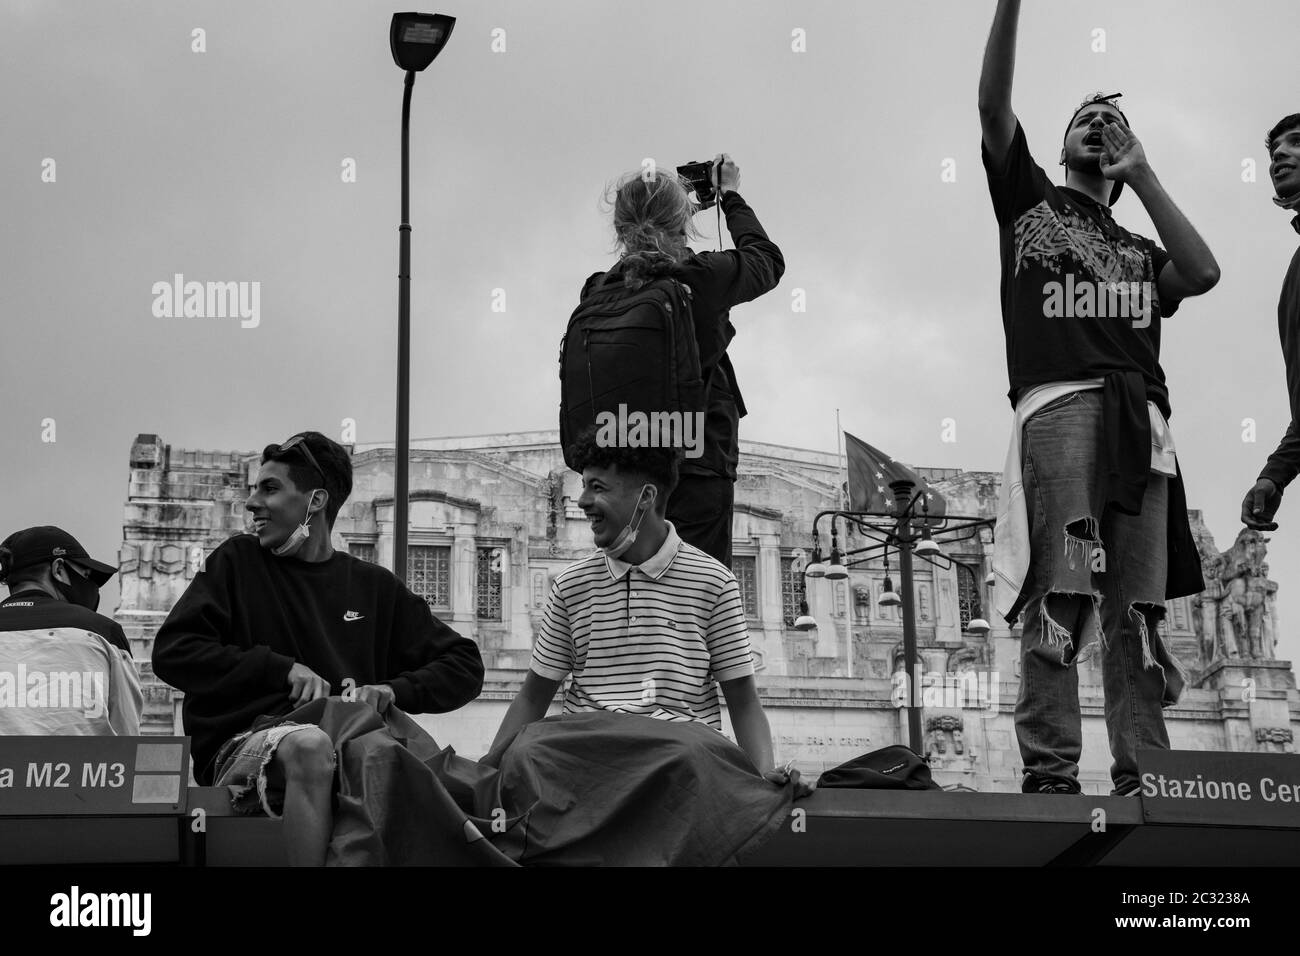 Gli amici stanno chiacchierando e ridendo mentre una donna sta scattando la foto davanti alla stazione centrale di Milano durante l'assemblea di protesta in solidarietà con BLM. Foto Stock